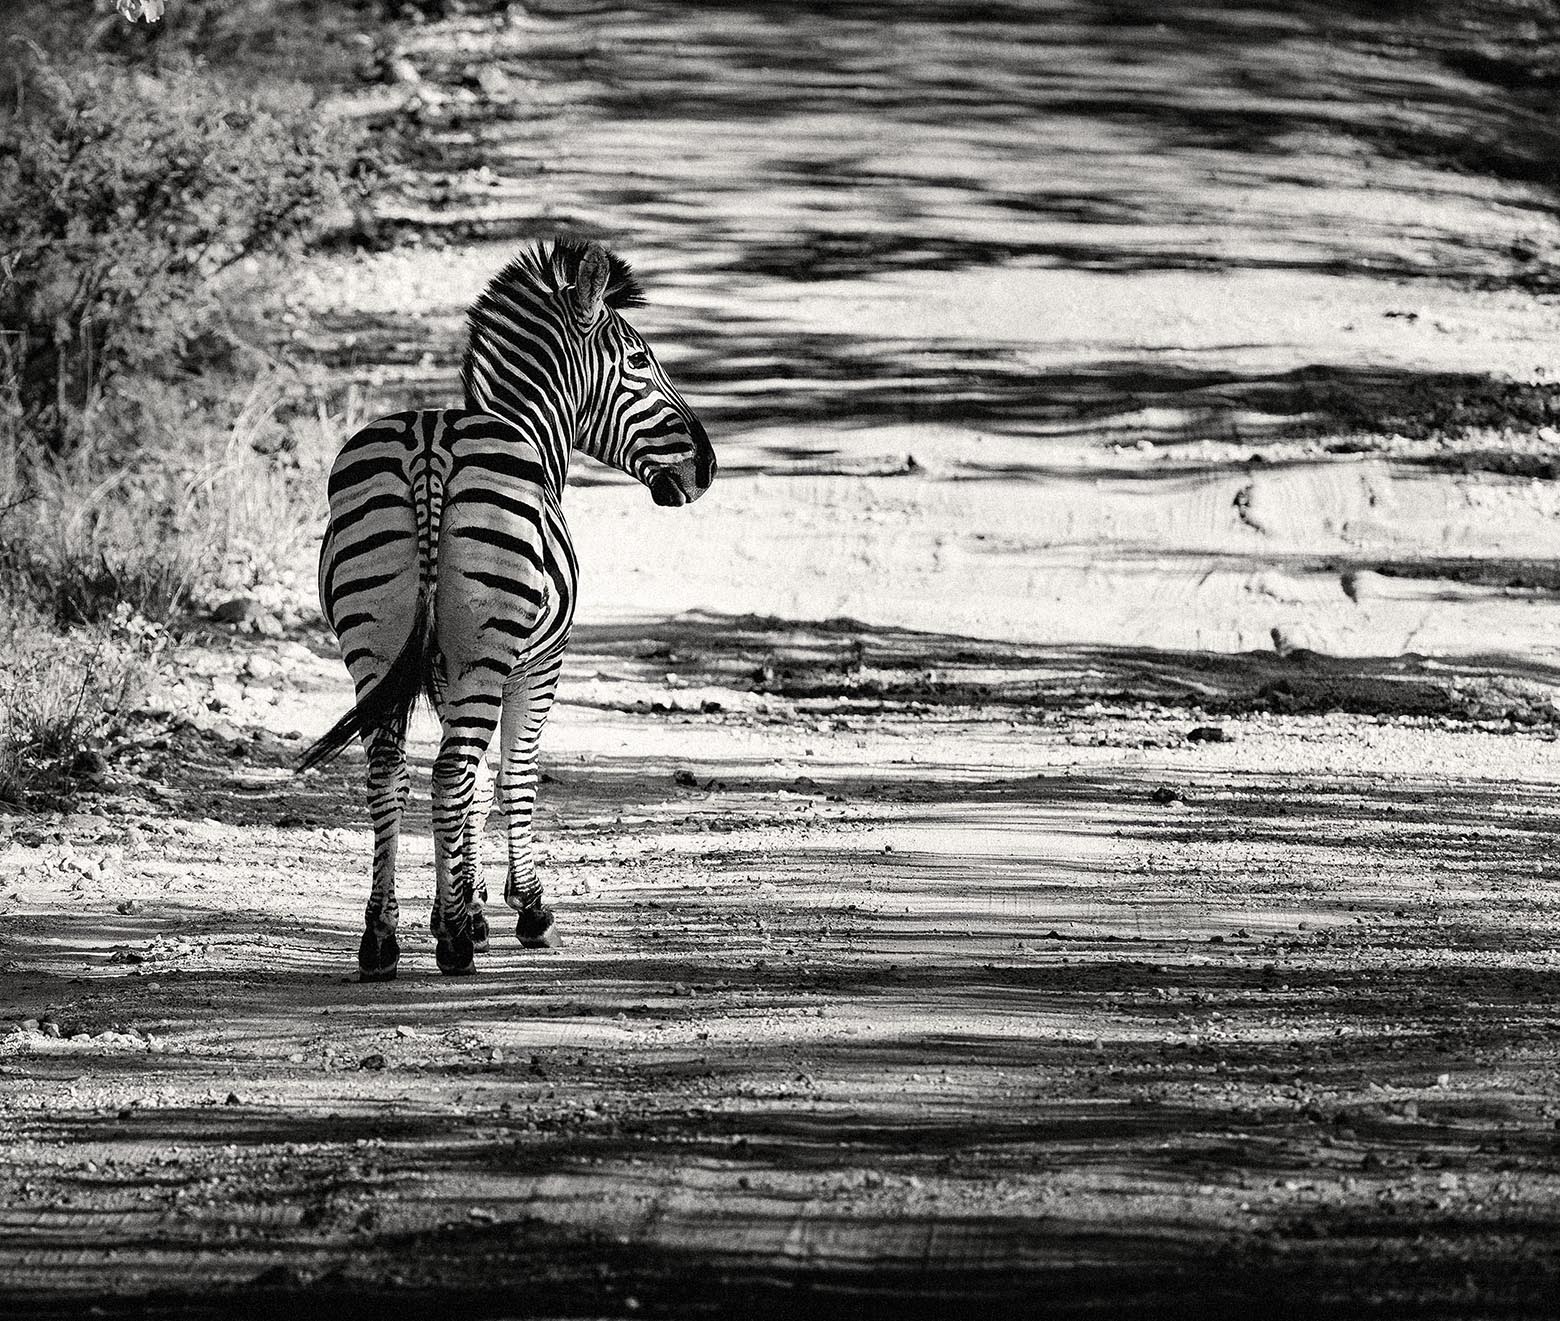 Arthur Los Fotografie - South African National Park Kruger